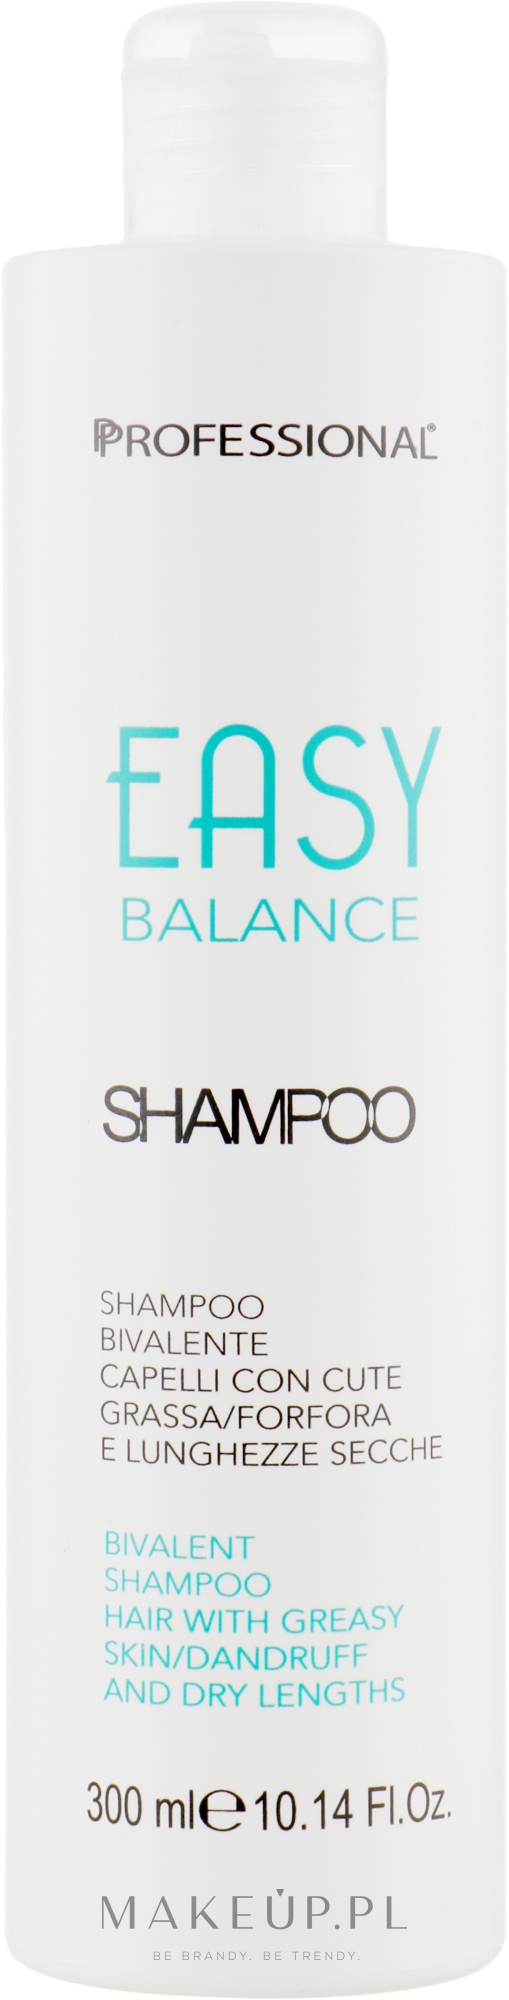 szampon do włosów easy balance